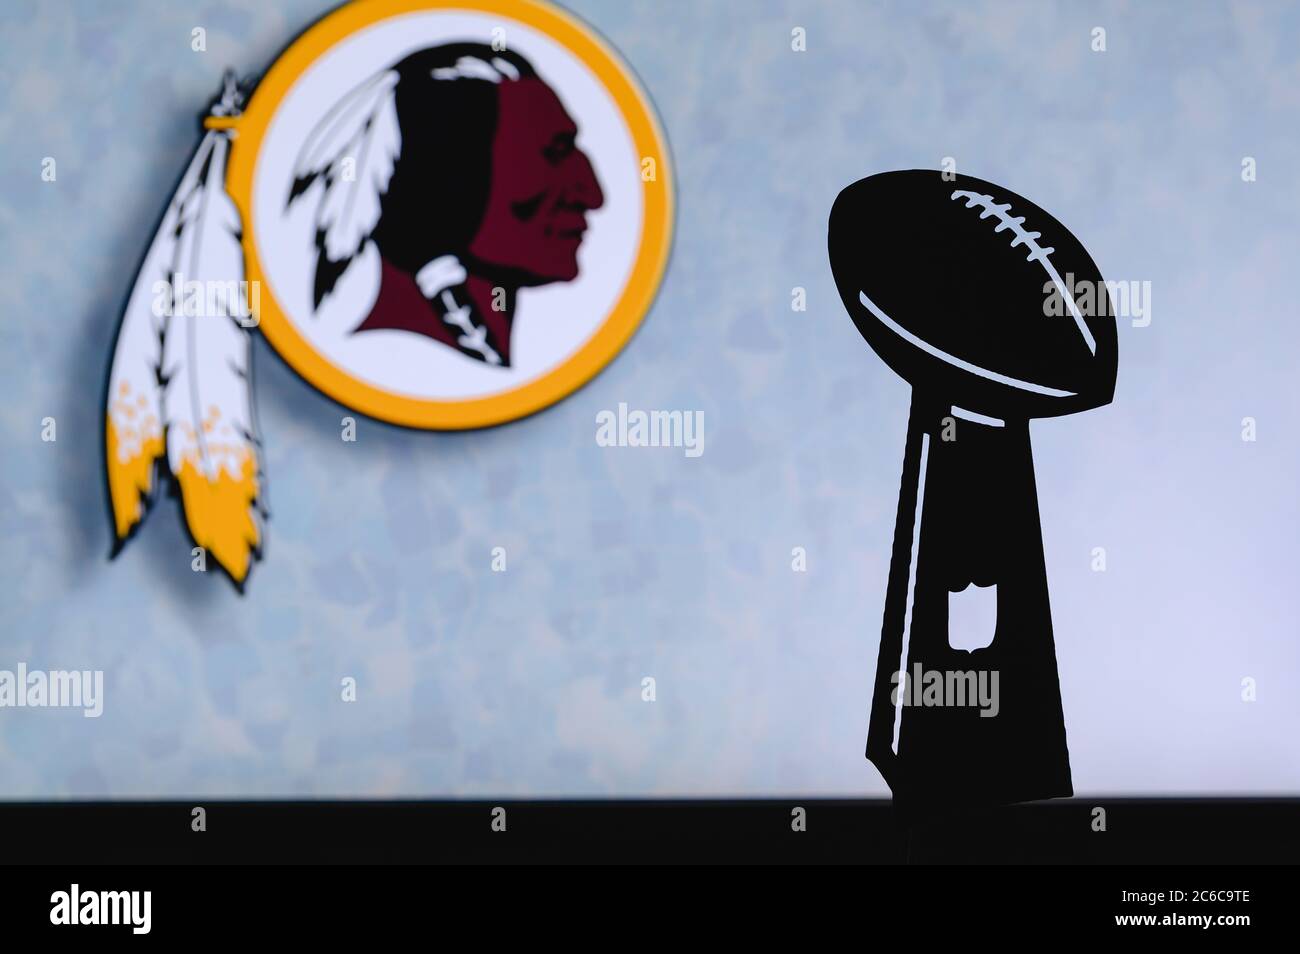 Washington Redskins profesional de fútbol americano club, silueta de la NFL trofeo, logotipo del club en el fondo. Foto de stock